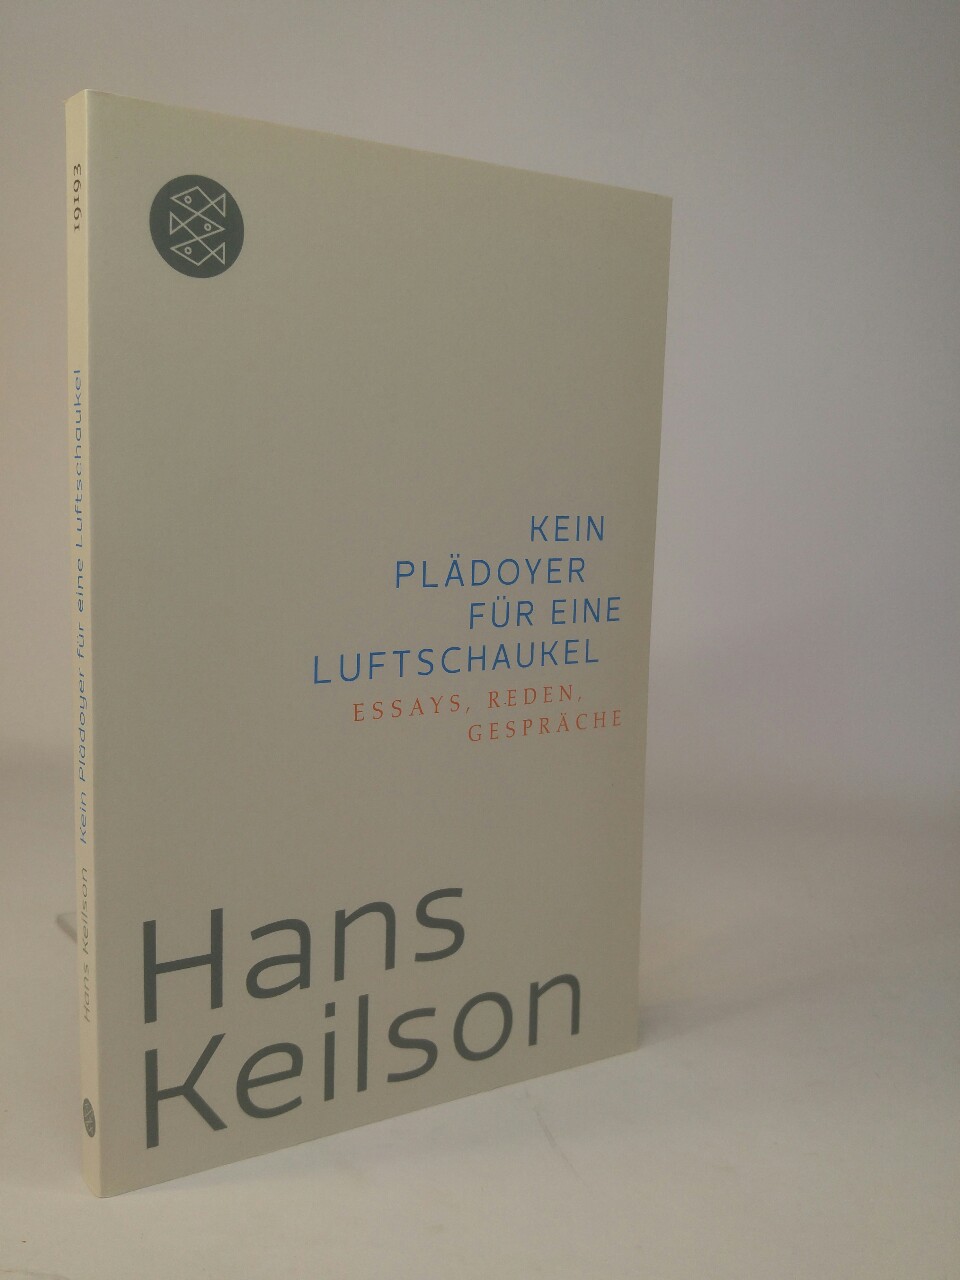 Kein Plädoyer für eine Luftschaukel Essays, Reden, Gespräche Originalausgabe - Keilson, Hans und Heinrich Detering (Hrsg.)